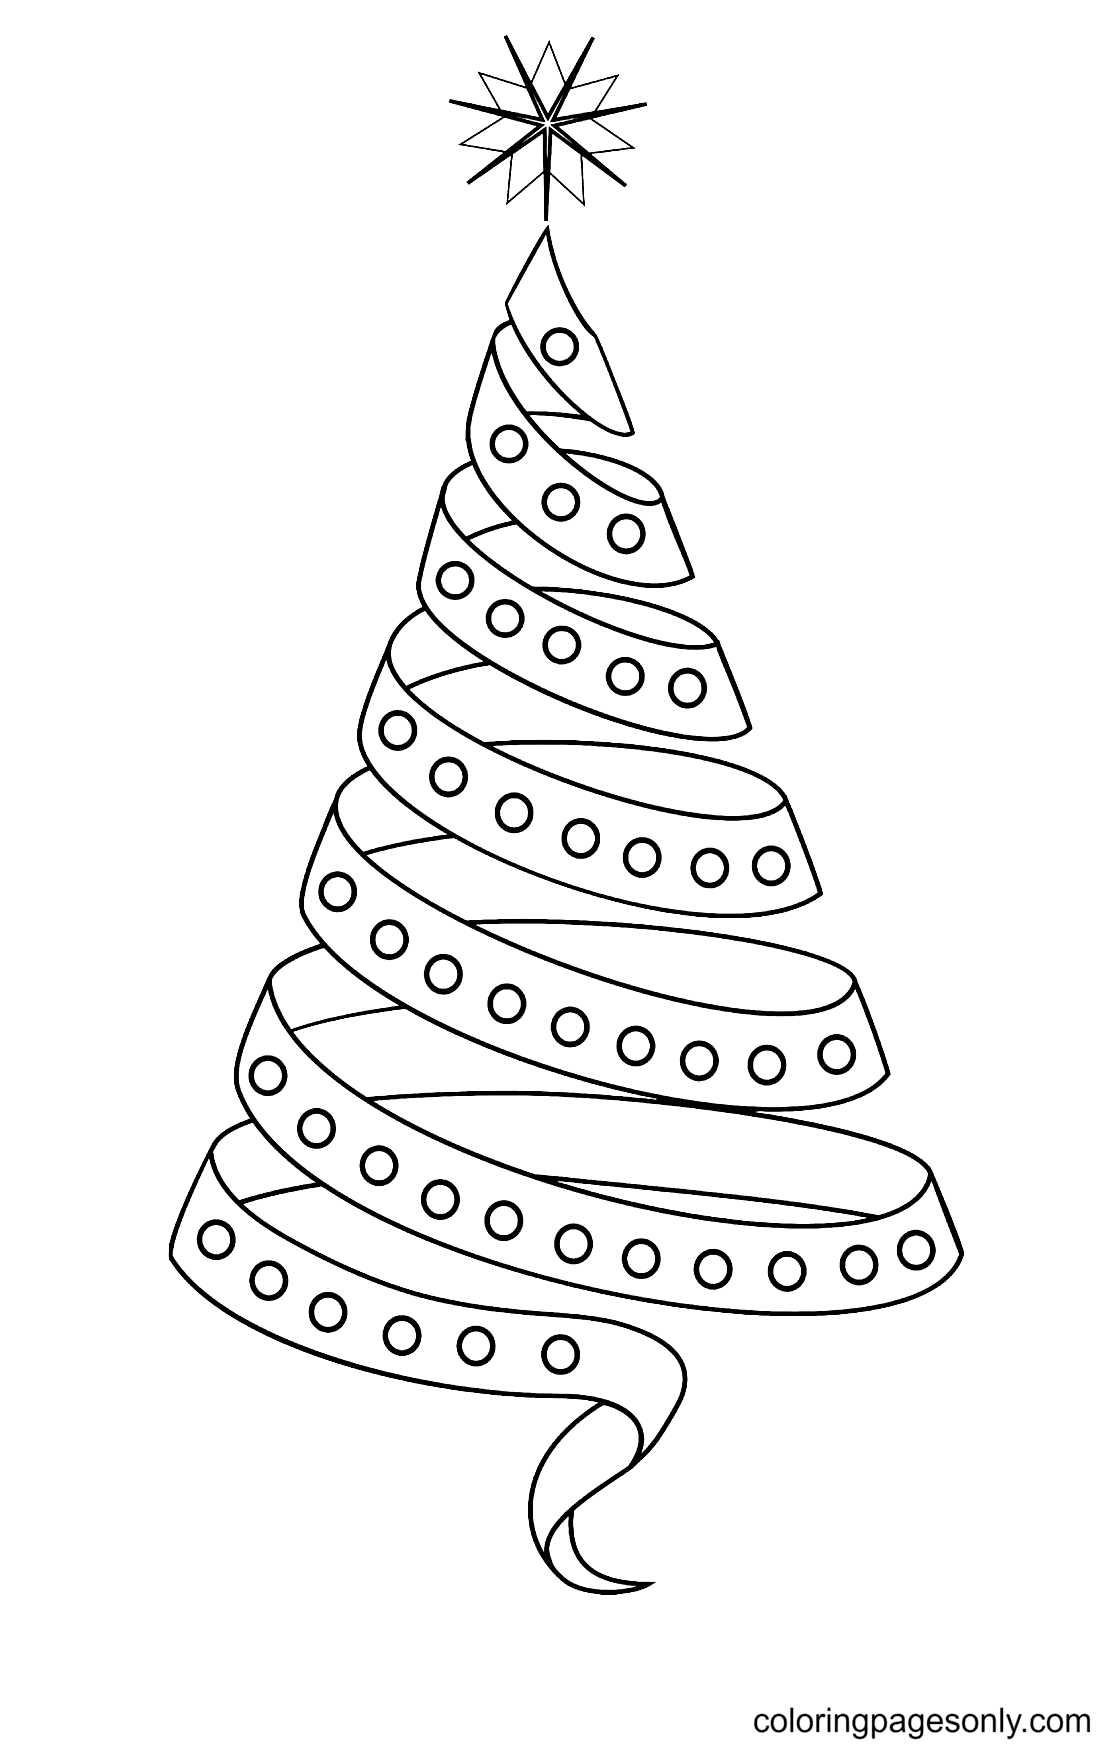 Bonito árbol de Navidad con cinta del árbol de Navidad.